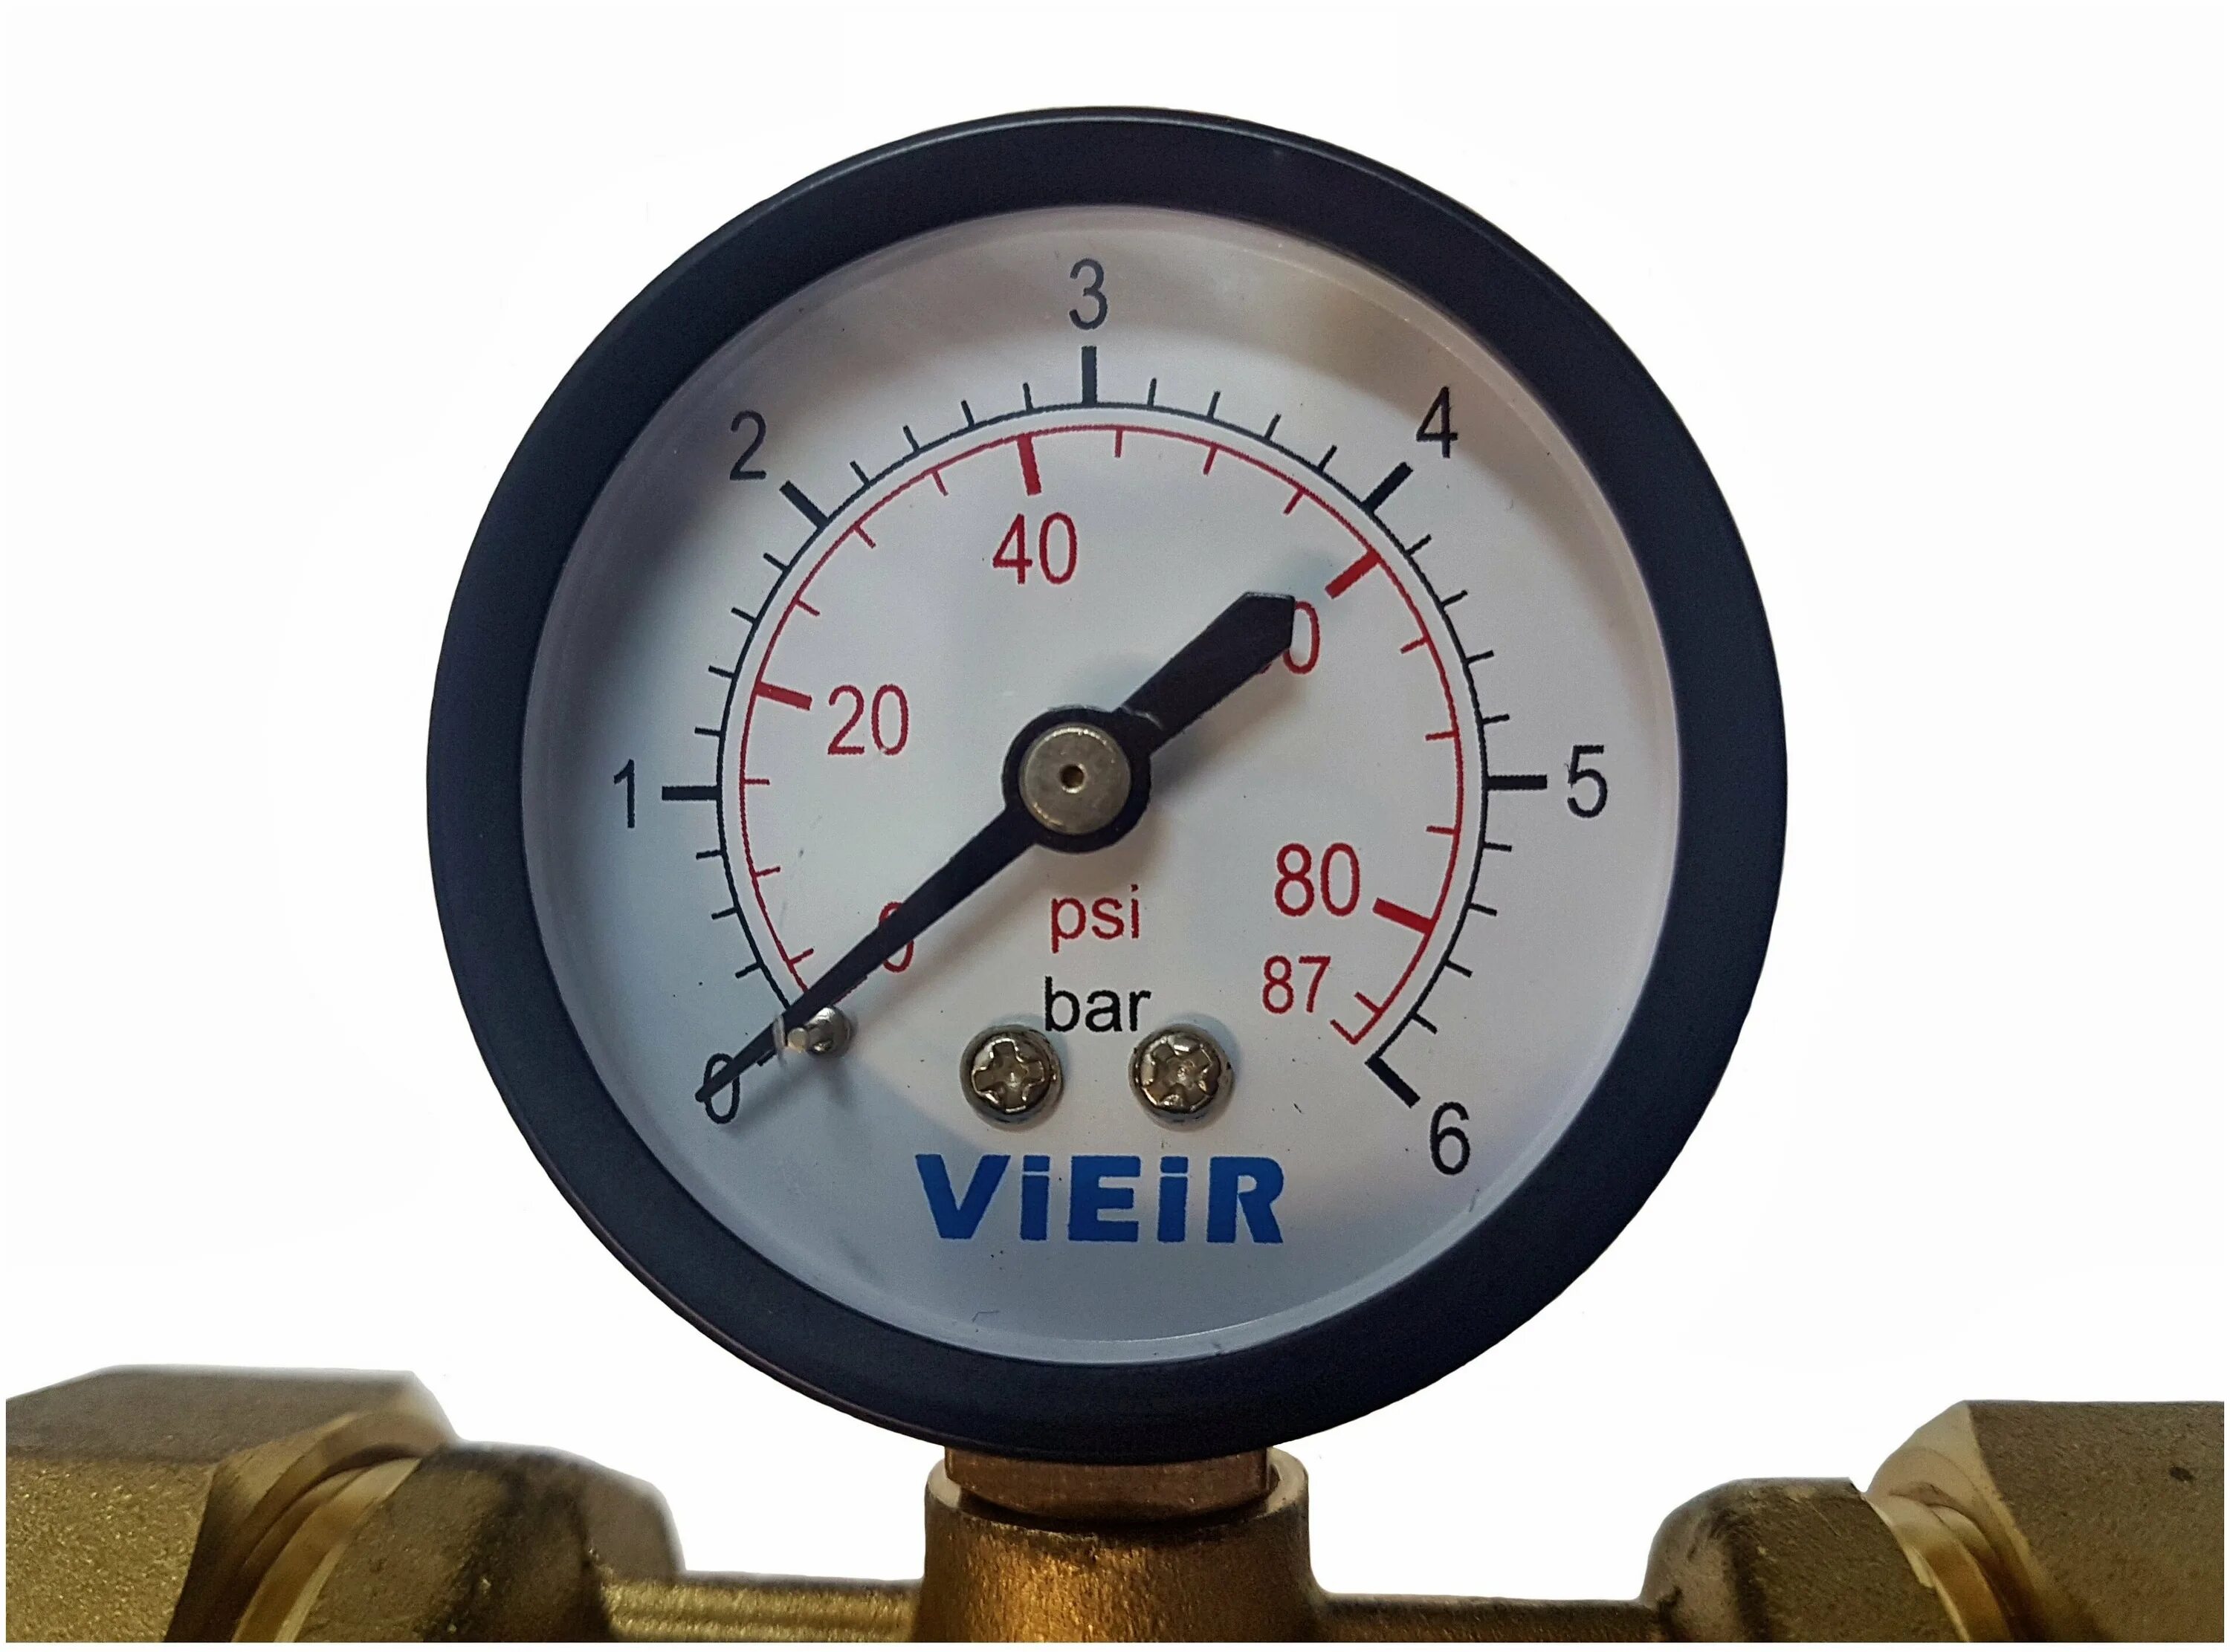 Манометр давление воды в водопроводе. Фильтр для VIEIR jc156. Самопромывной фильтр VIEIR 1/2" С манометром. Самопромывной фильтр с манометром 1" VIEIR (jc156),. Фильтр самопромывной VIEIR.